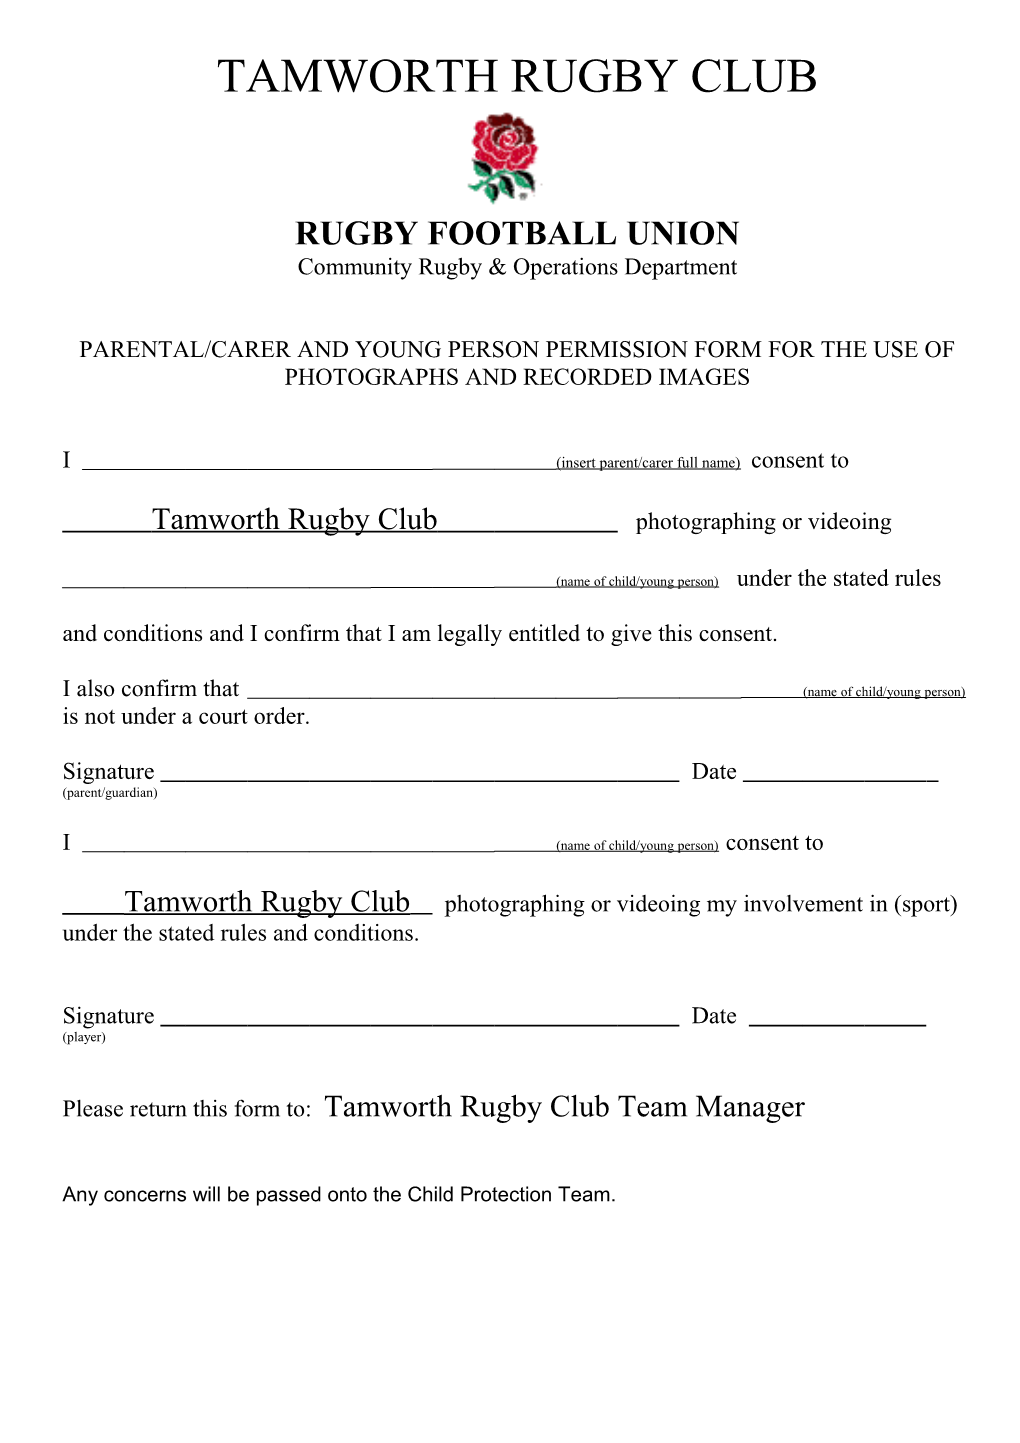 Tamworth Rugby Club